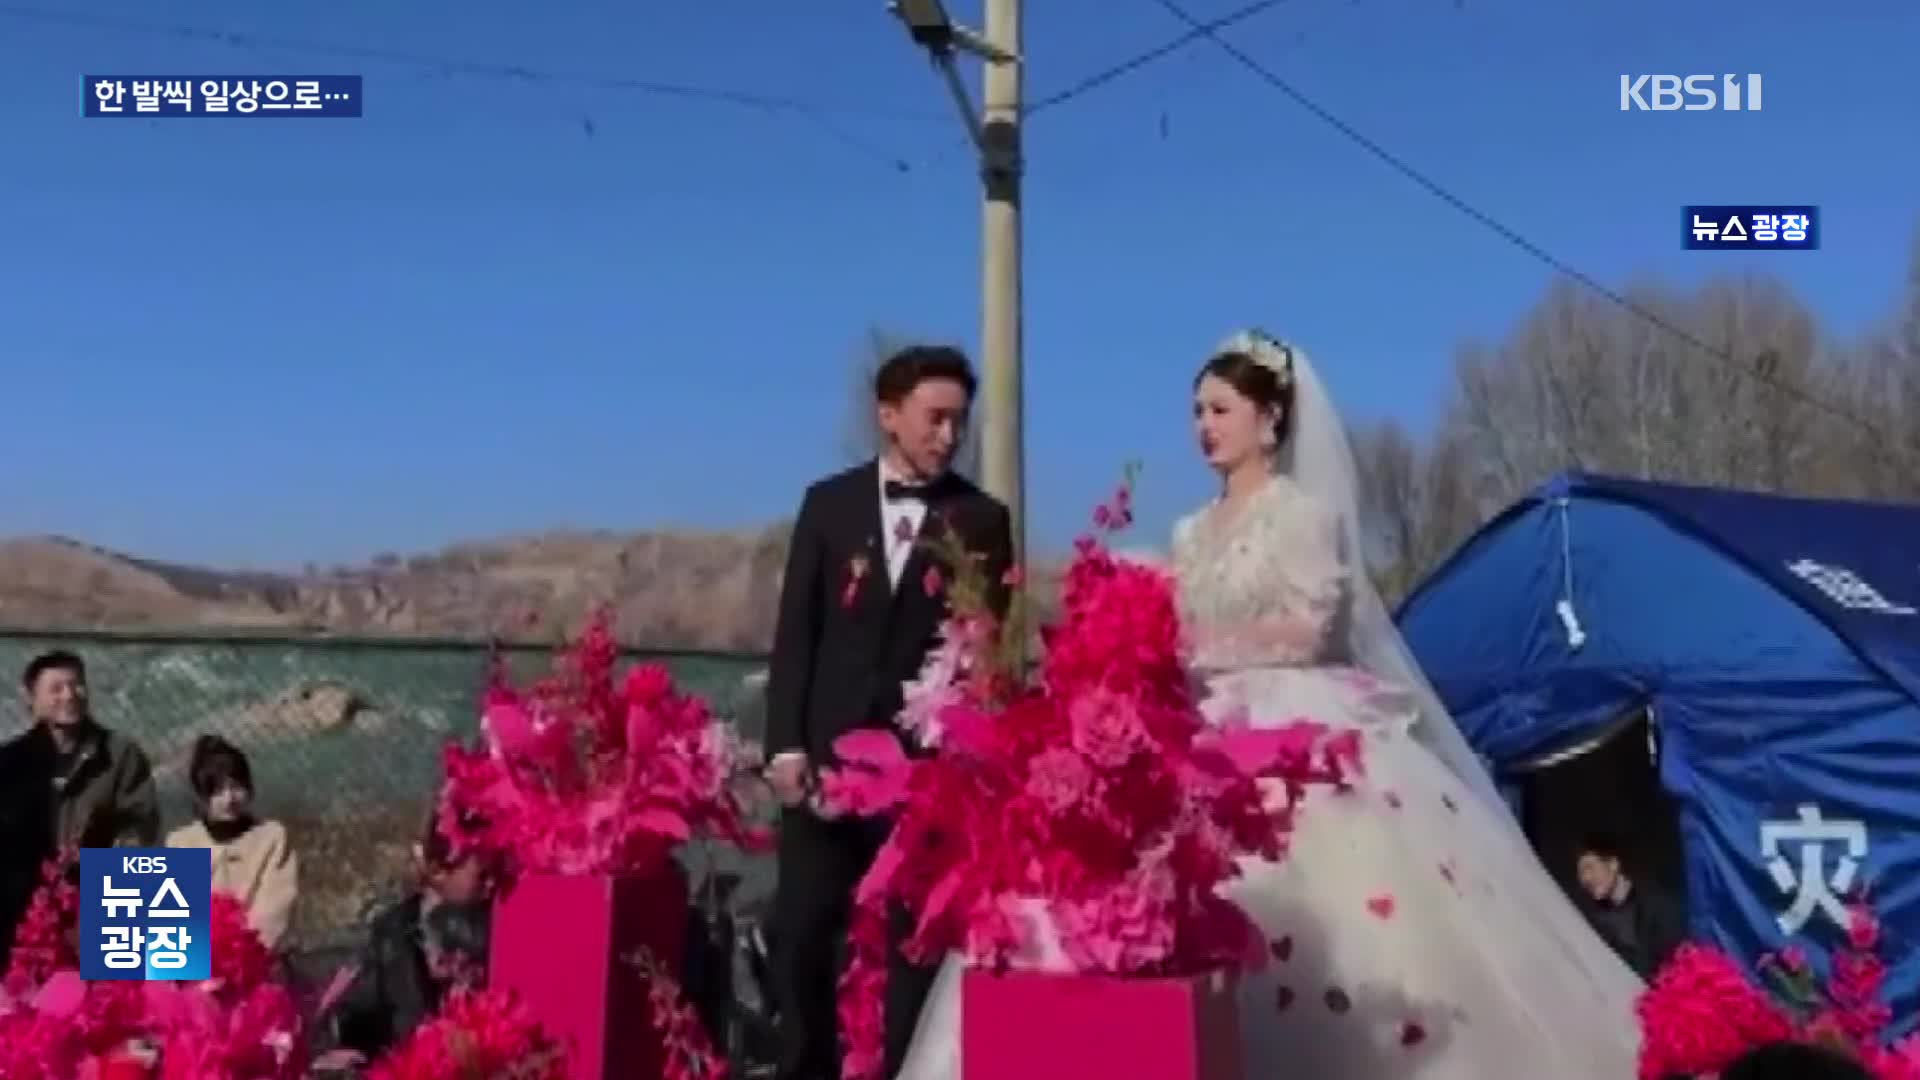 간쑤성, 지진 상처 딛고 일상으로…이재민촌 결혼식에 천막 학교까지